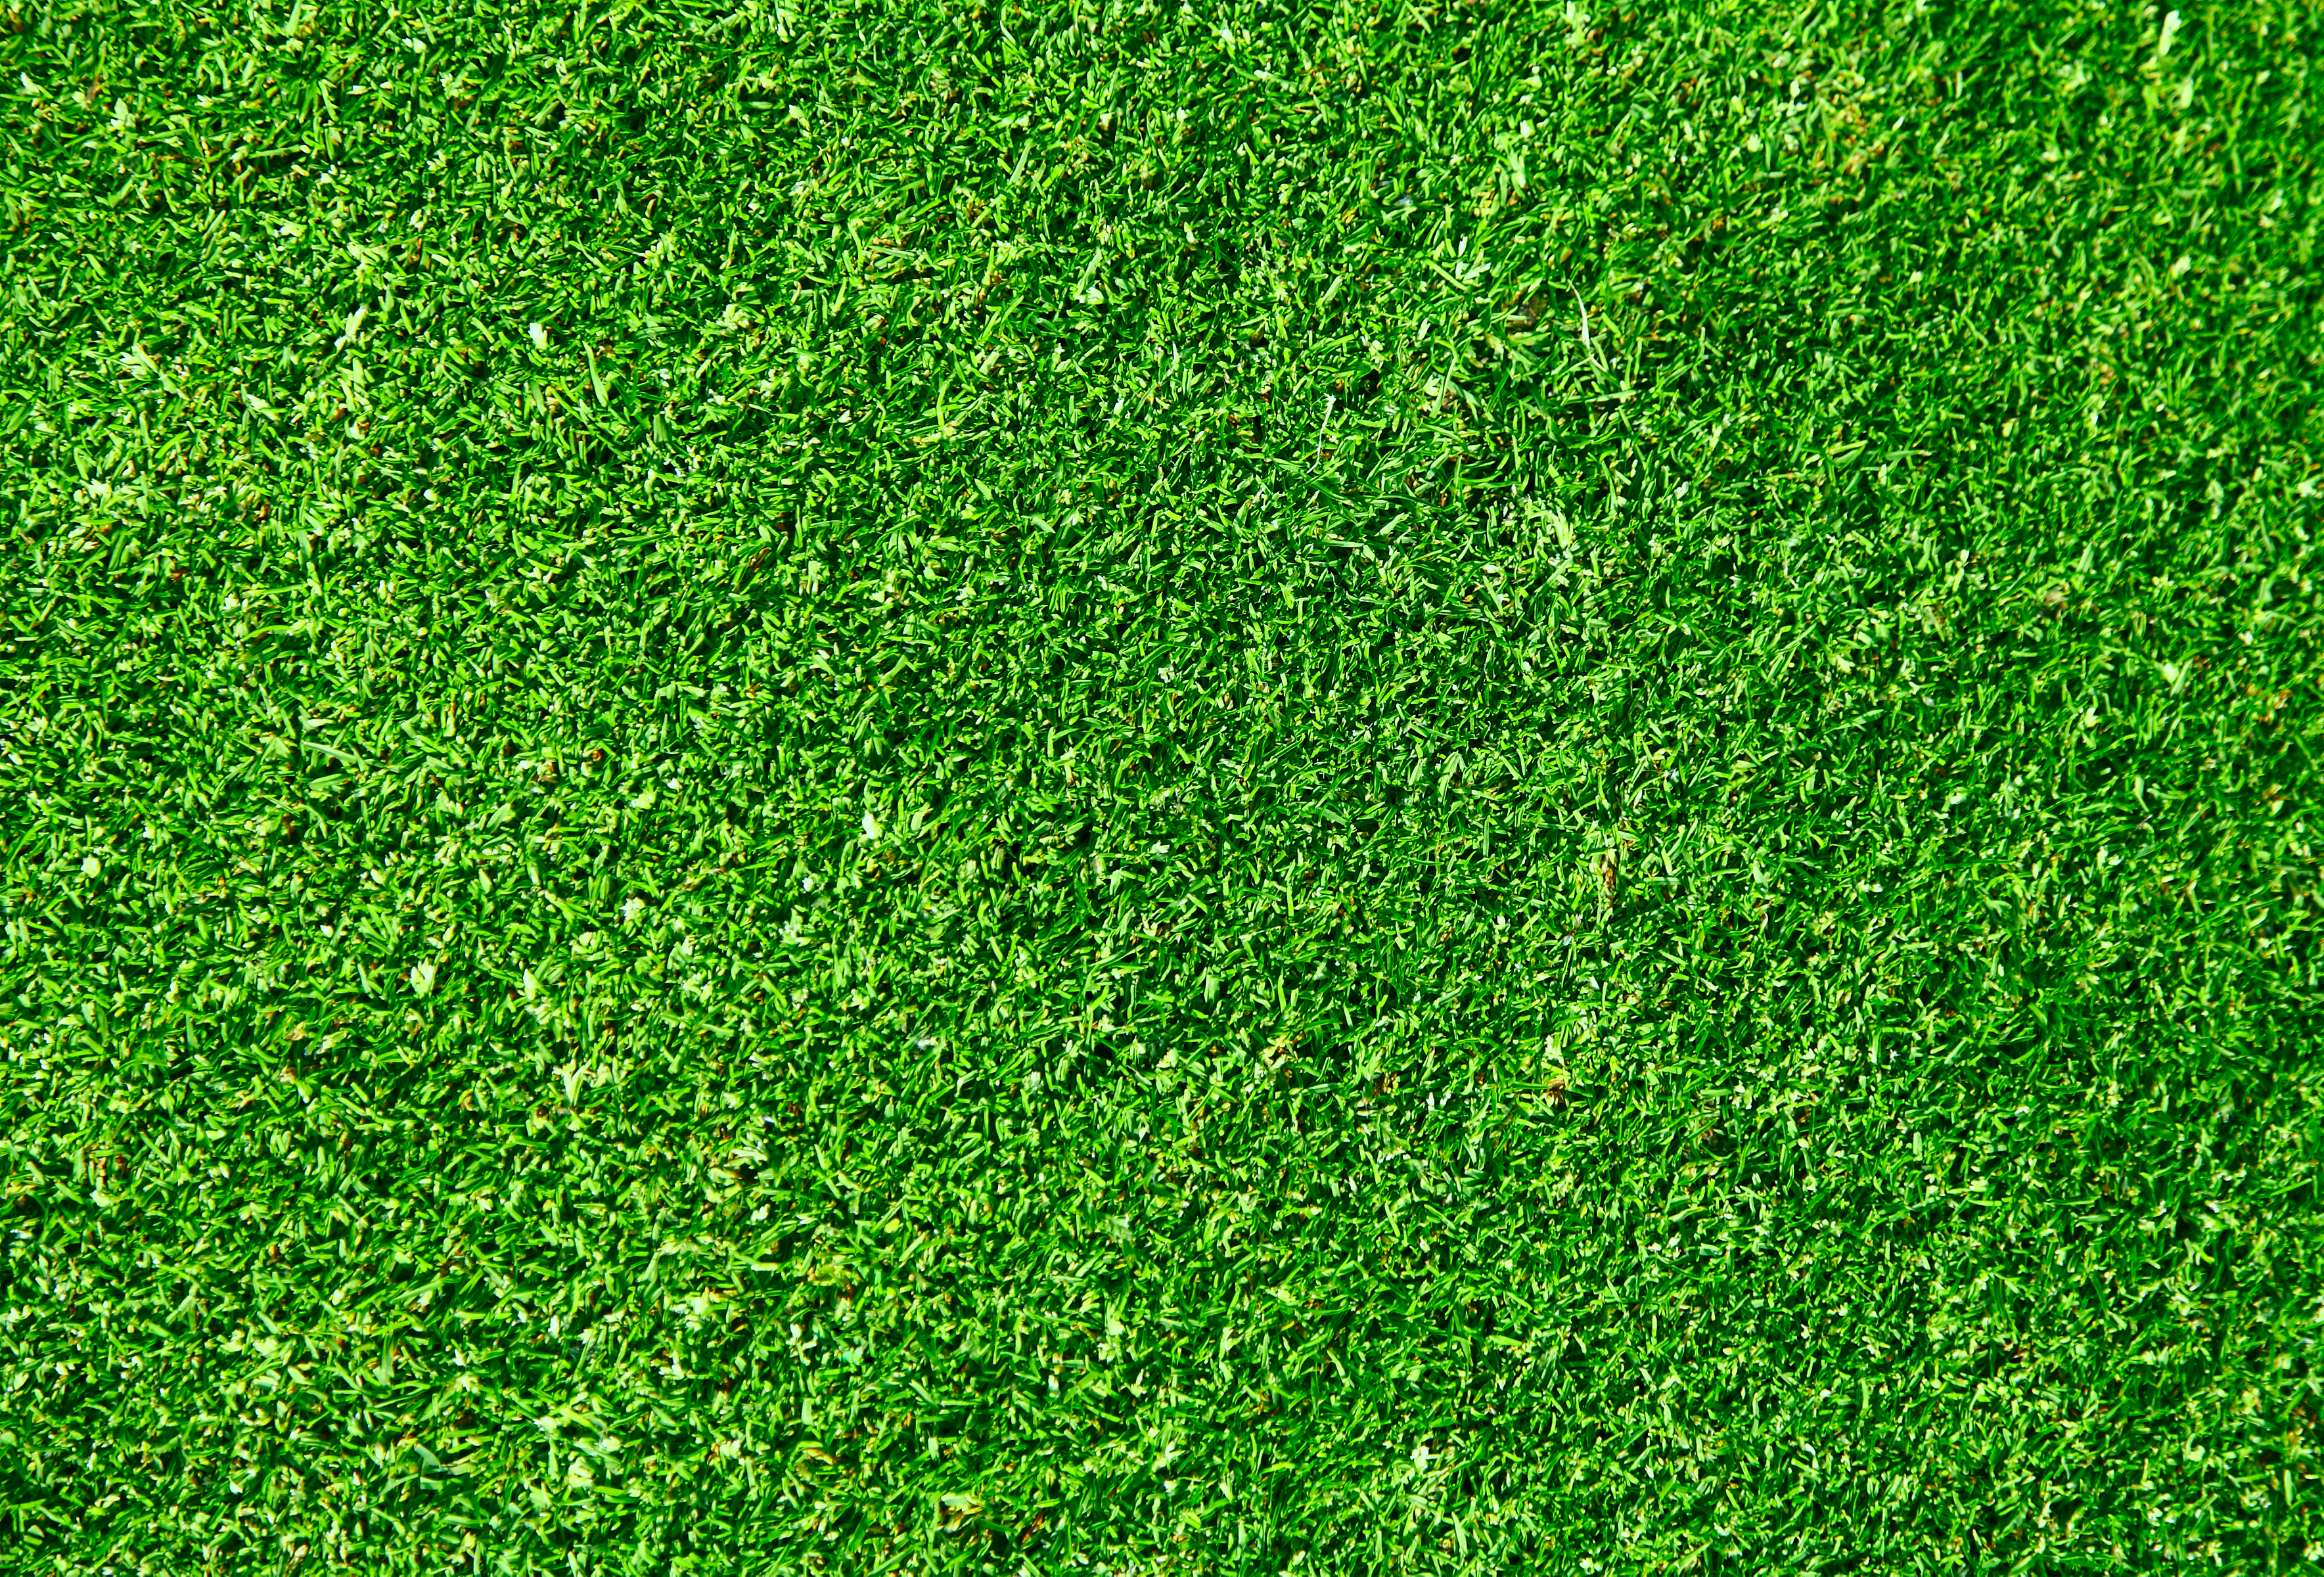 Grass texture photo